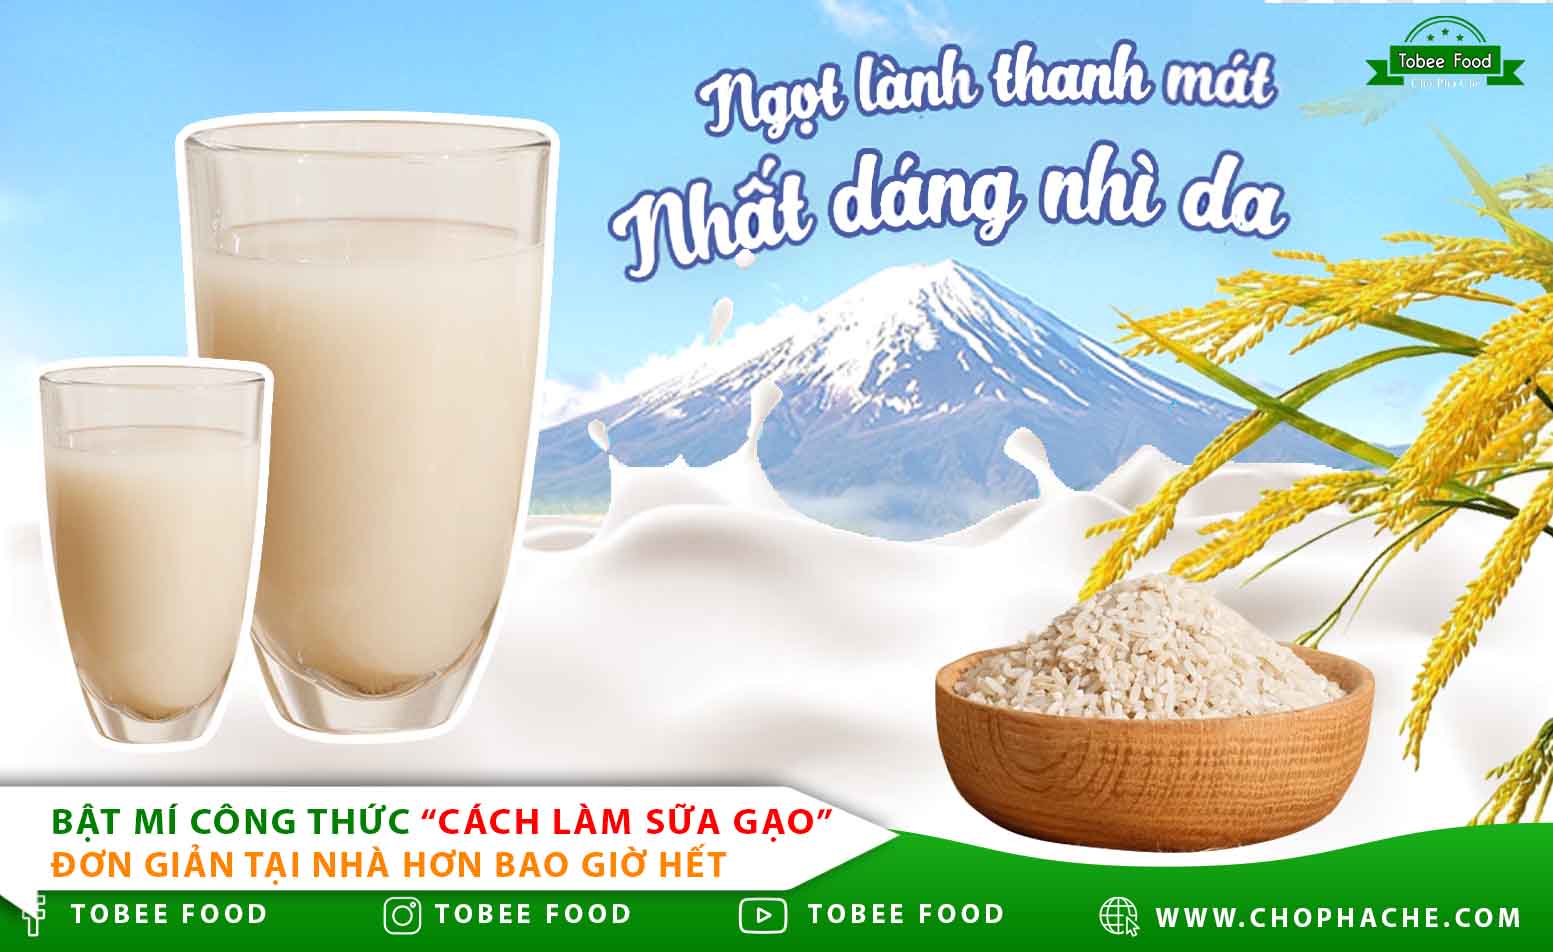 Cách làm sữa gạo thơm ngon bổ dưỡng tại nhà